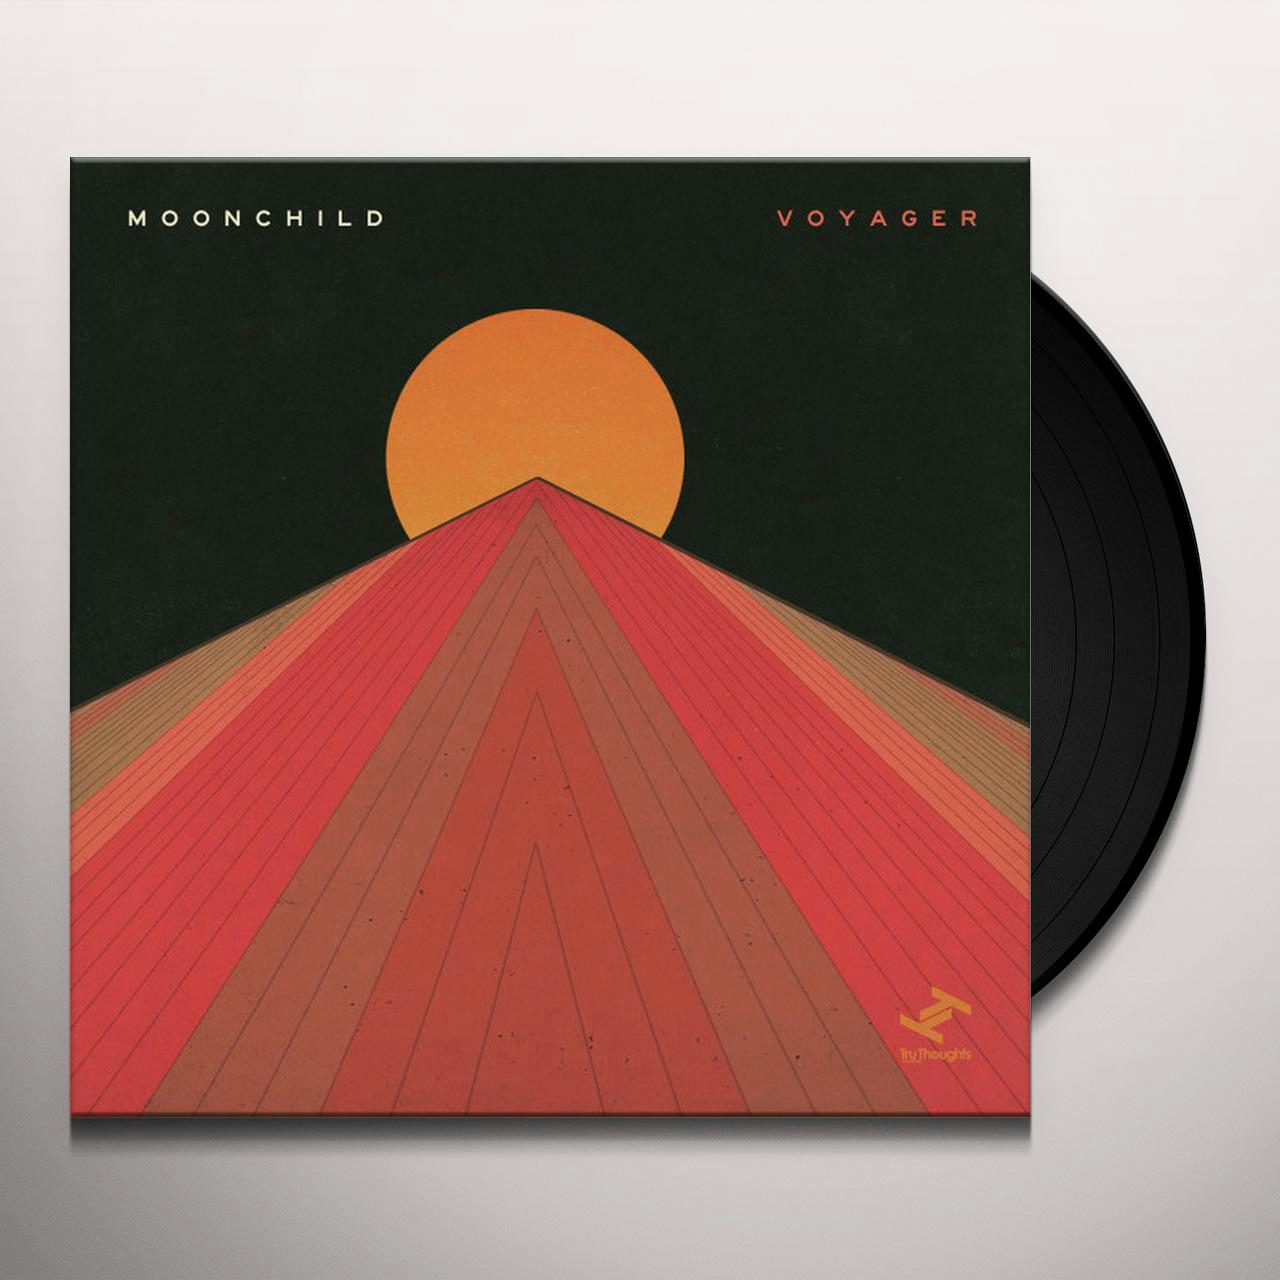 Voyager Vinyl Record - Moonchild